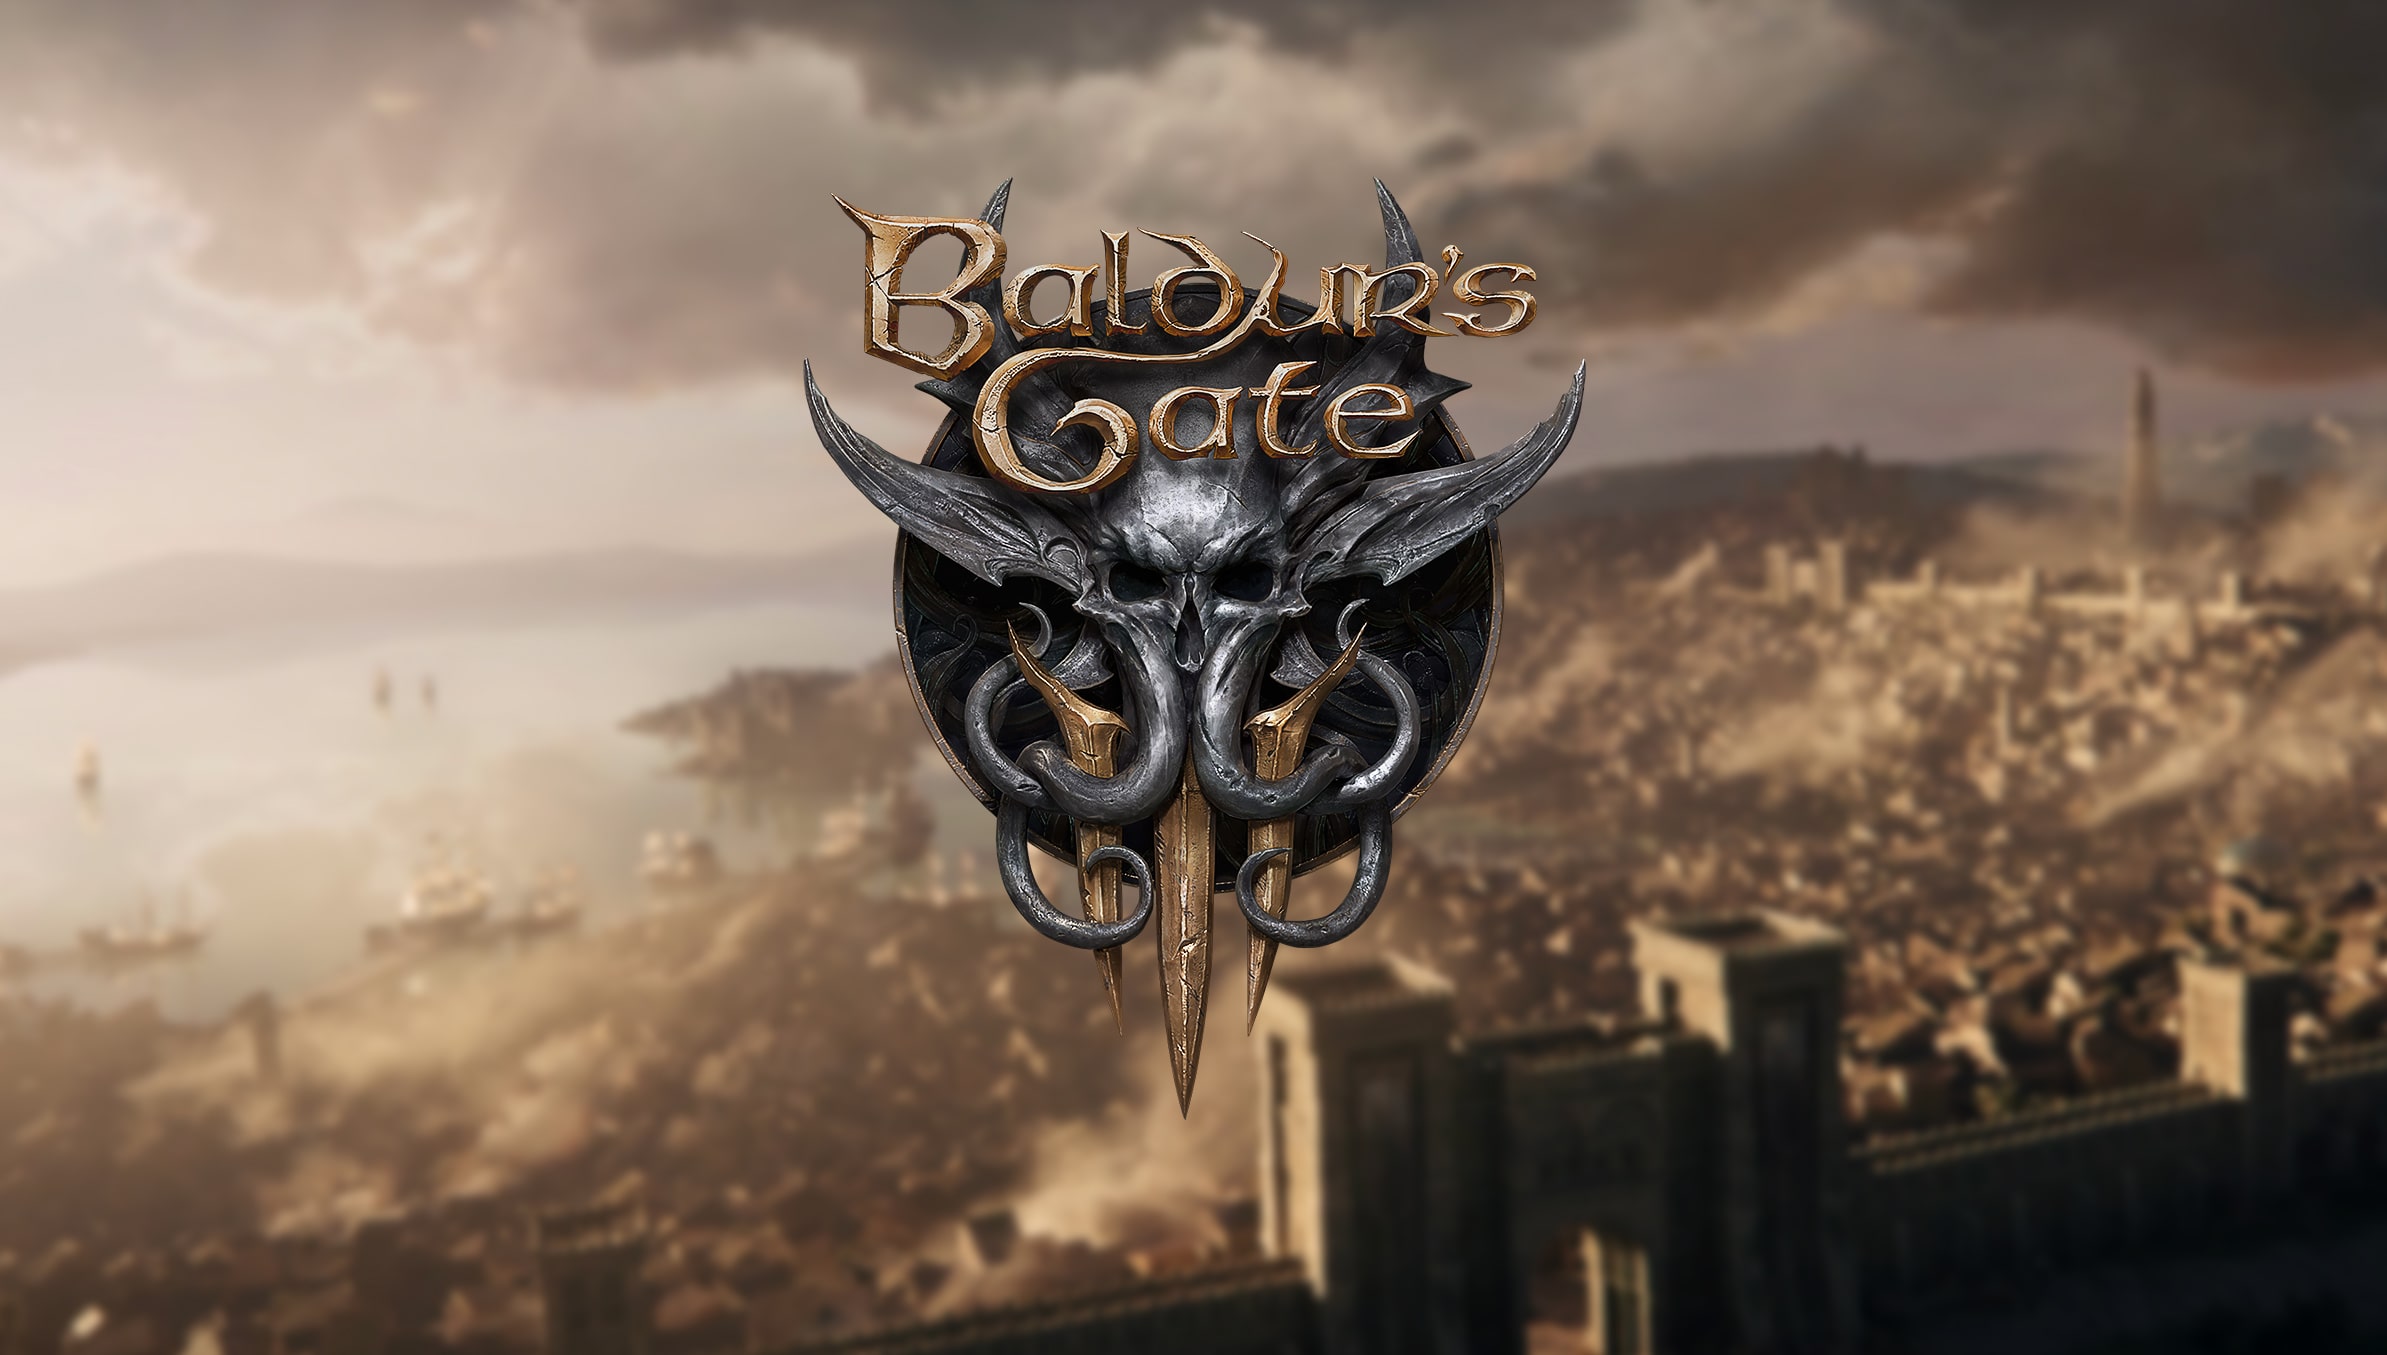 baldurs gate 3 7 release date